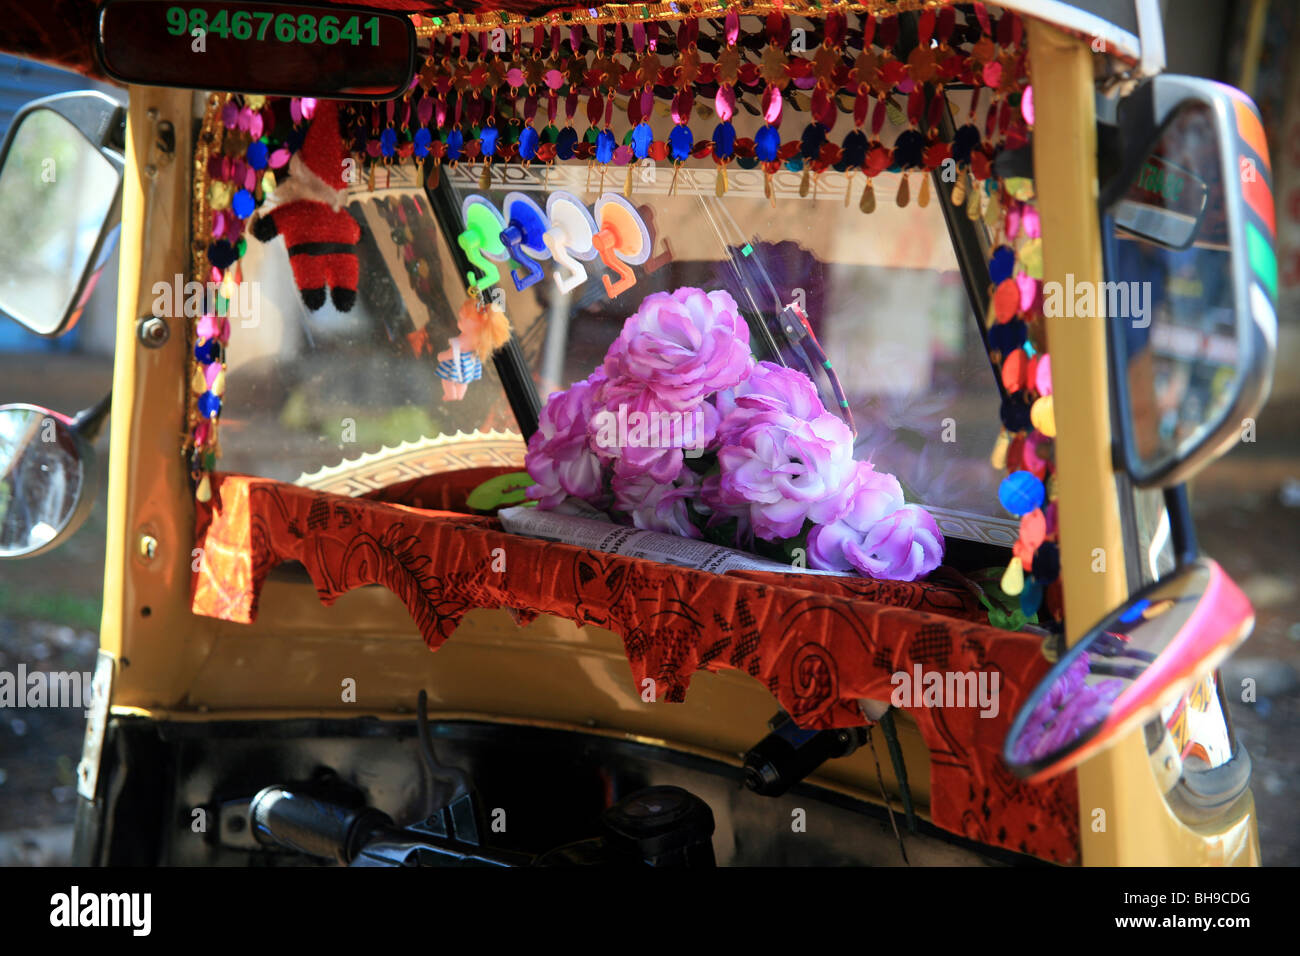 Interoir of an auto rickshaw. Stock Photo